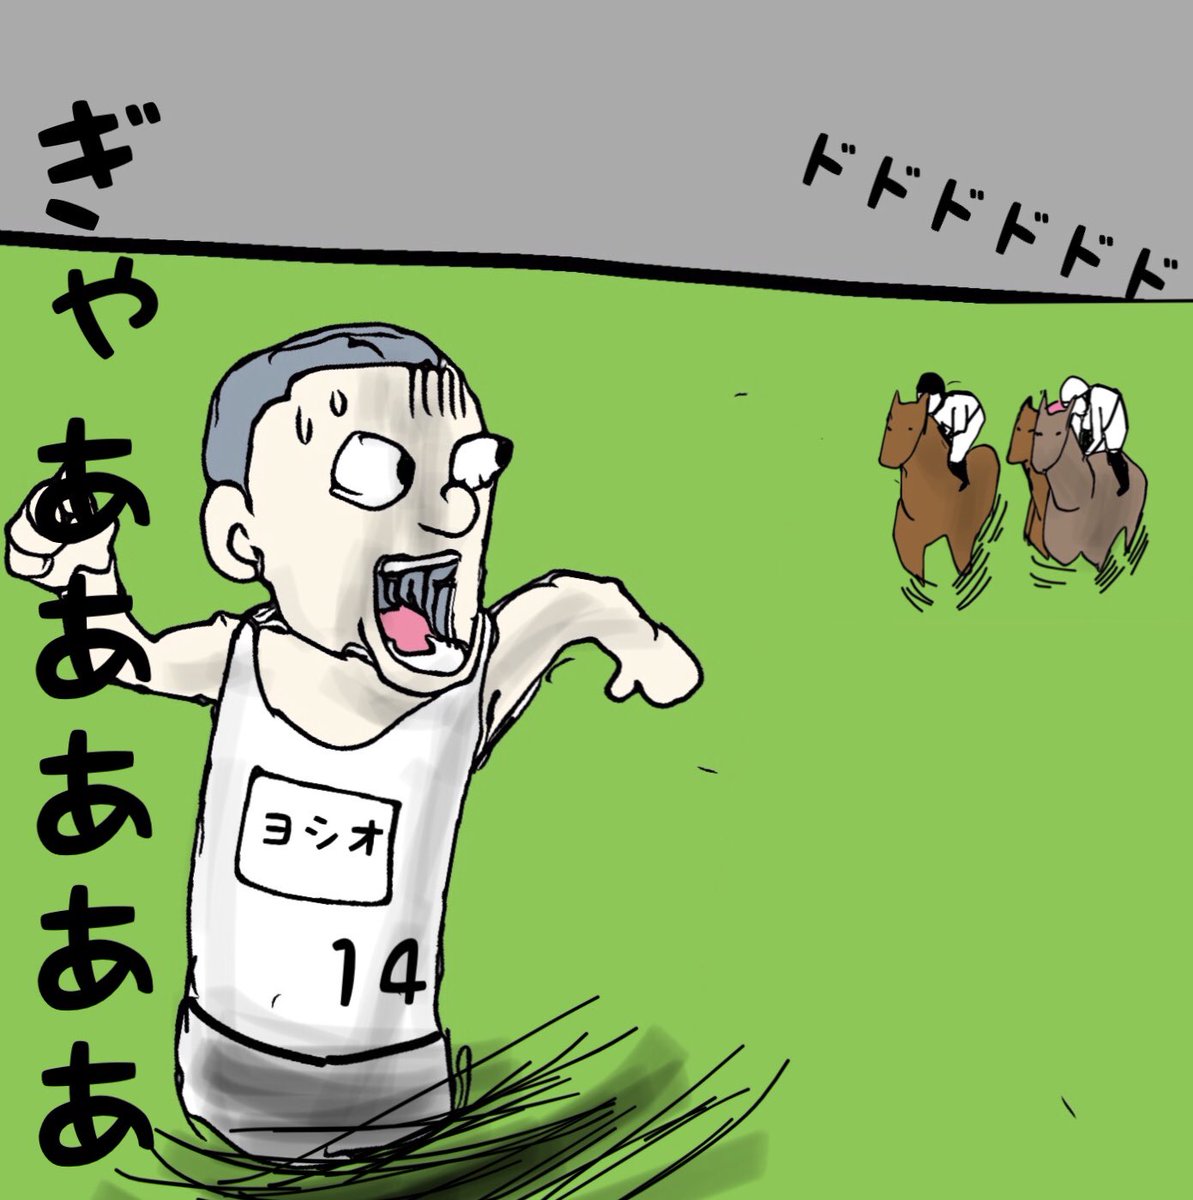 くれぐれも後続馬に気をつけて!
無事に完走を!

#ヨシオ
#勝浦正樹
#ジャパンカップ 